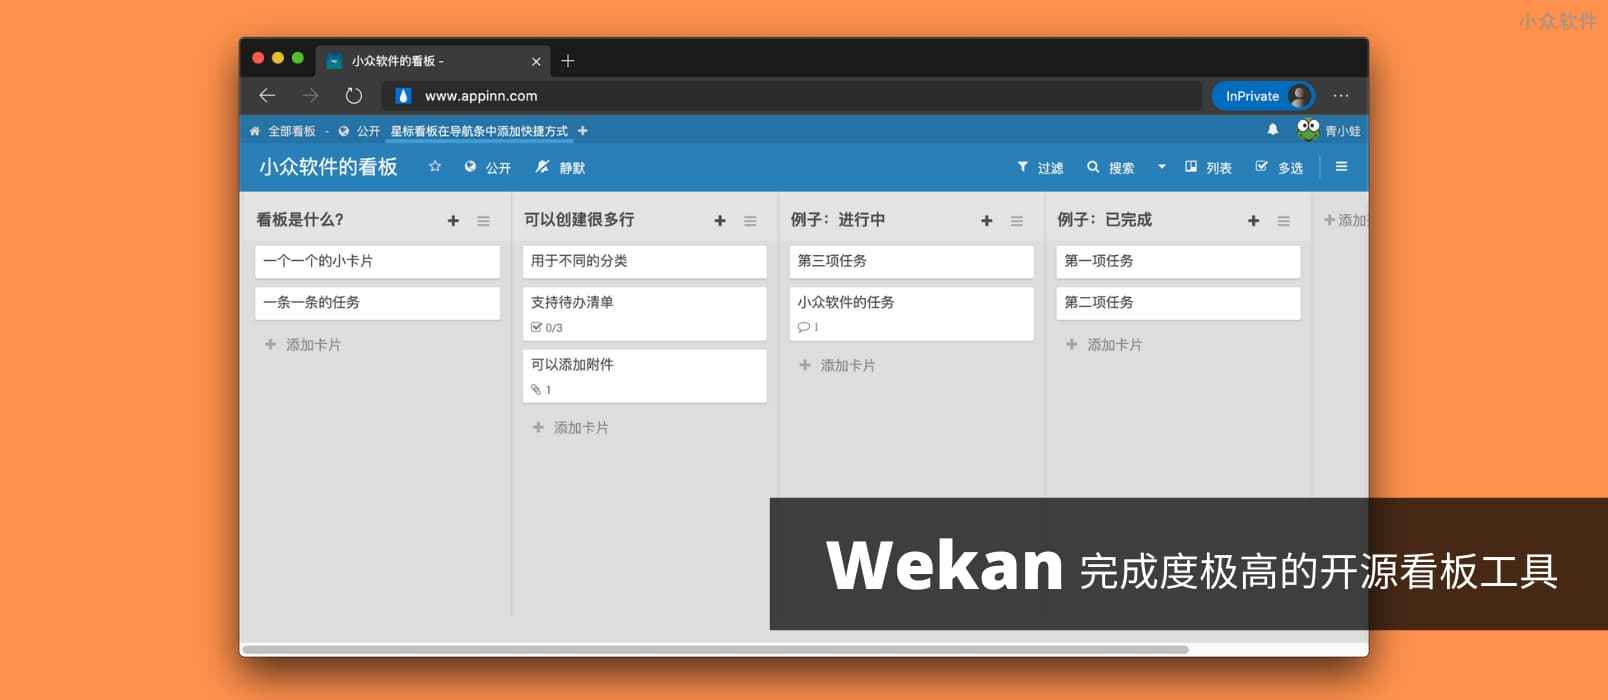 Wekan - 一个完成度很高的开源看板工具 1